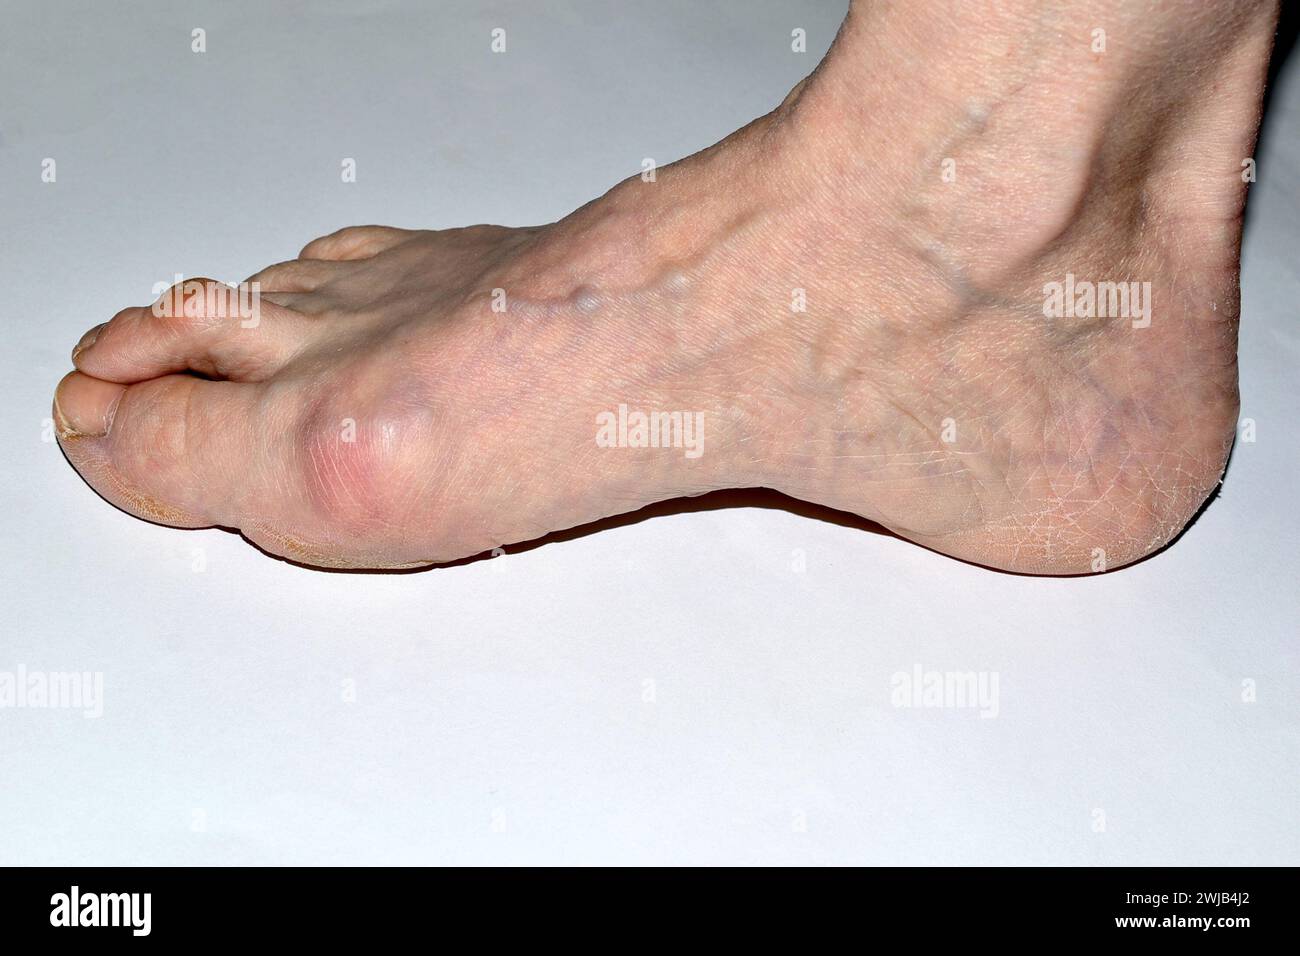 Das Bild zeigt den rechten Fuß des Beines, der von der Erkrankung des Hallux valgus betroffen ist. Stockfoto